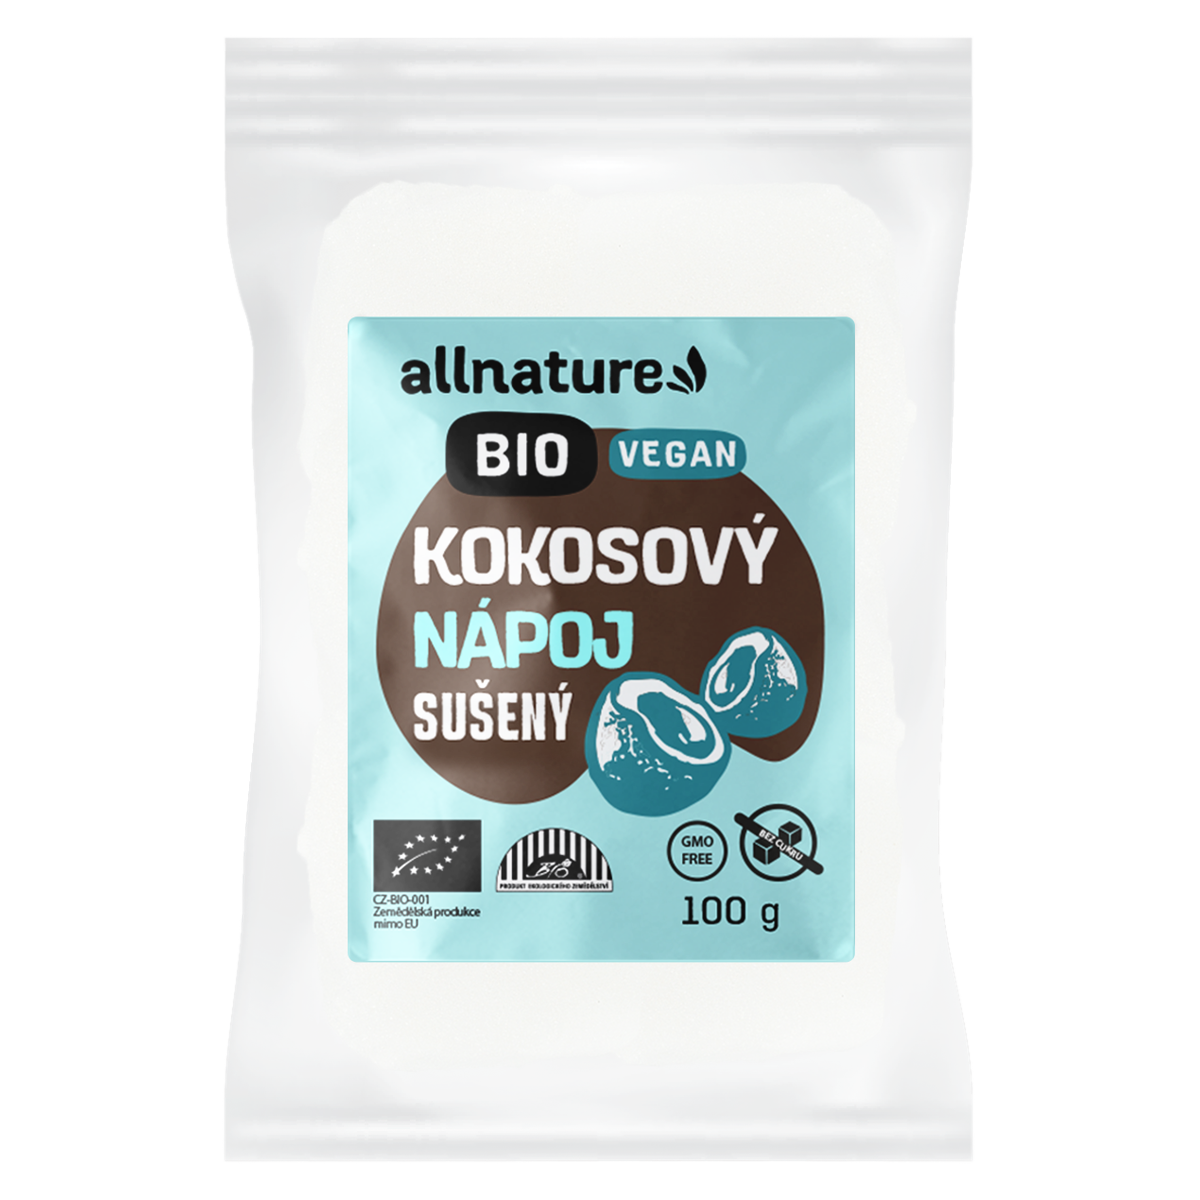 Allnature Kokosový nápoj sušený BIO - 100 g - bez přidaného cukru a pro vegany